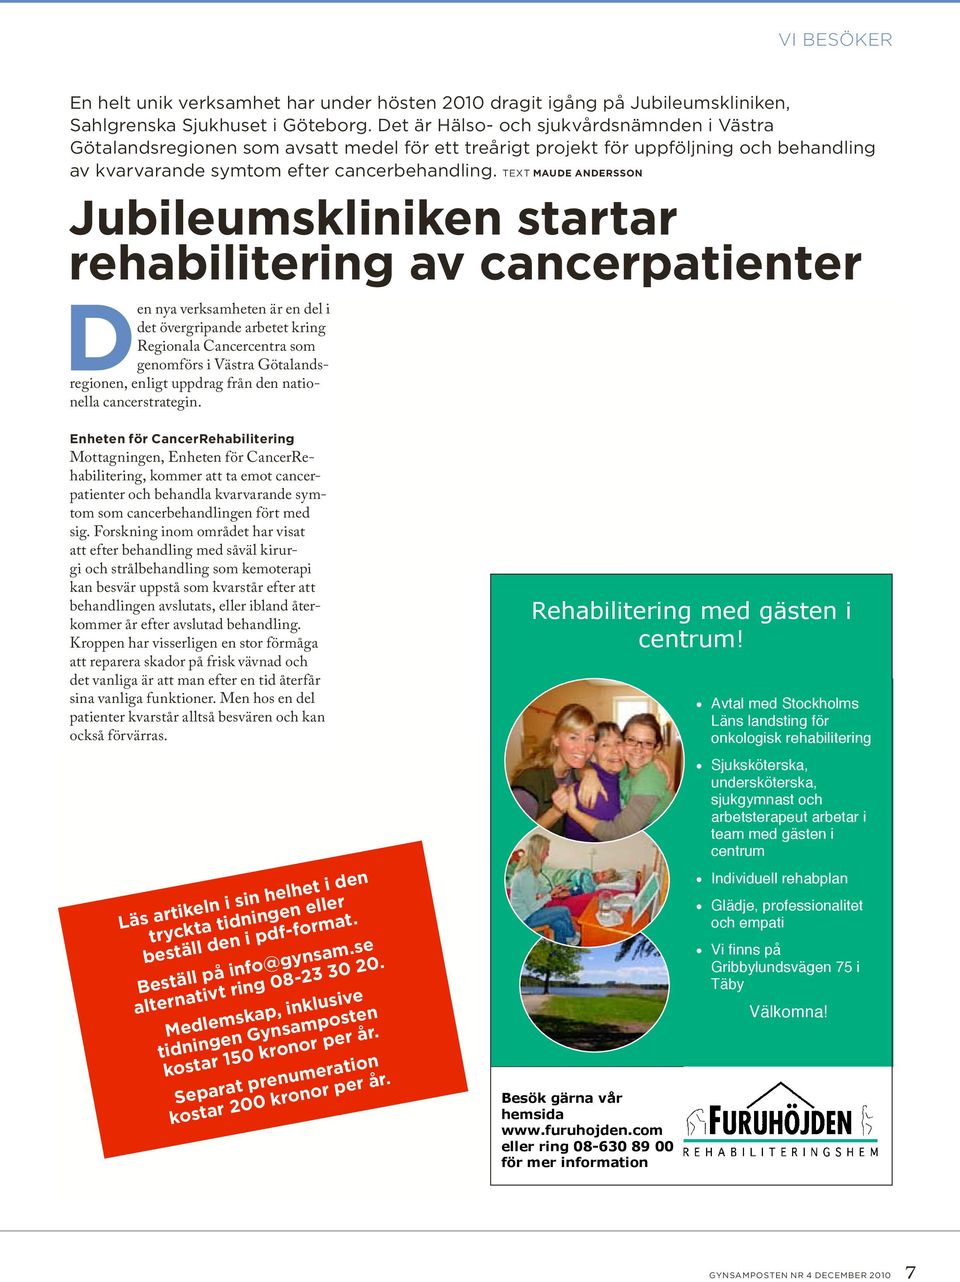 Text Maude Andersson Jubileumskliniken startar rehabilitering av cancerpatienter en nya verksamheten är en del i det övergripande arbetet kring Regionala Cancercentra som genomförs i Västra